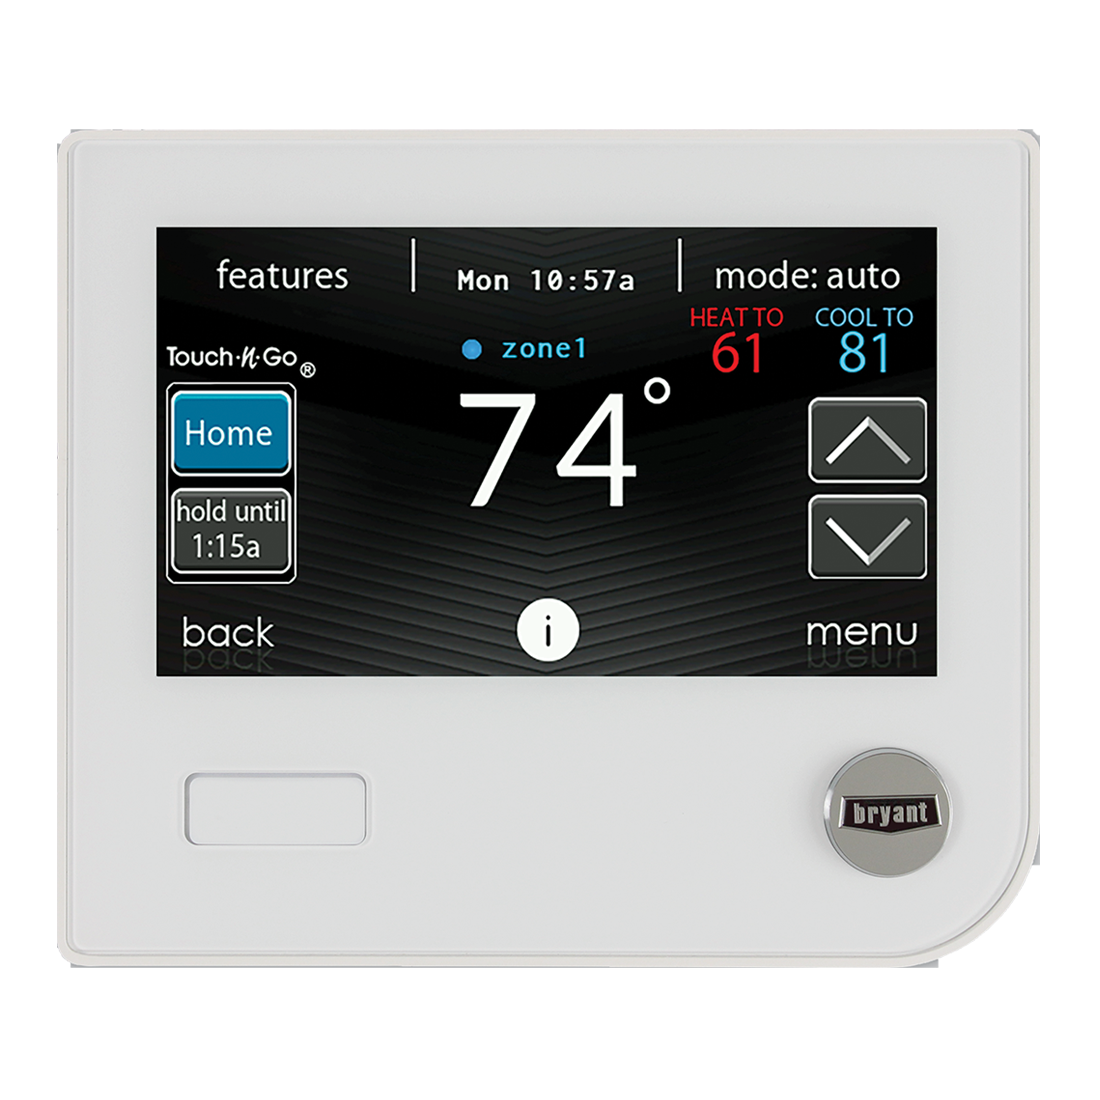 Thermostat connecté Comfort wifi CELC000579